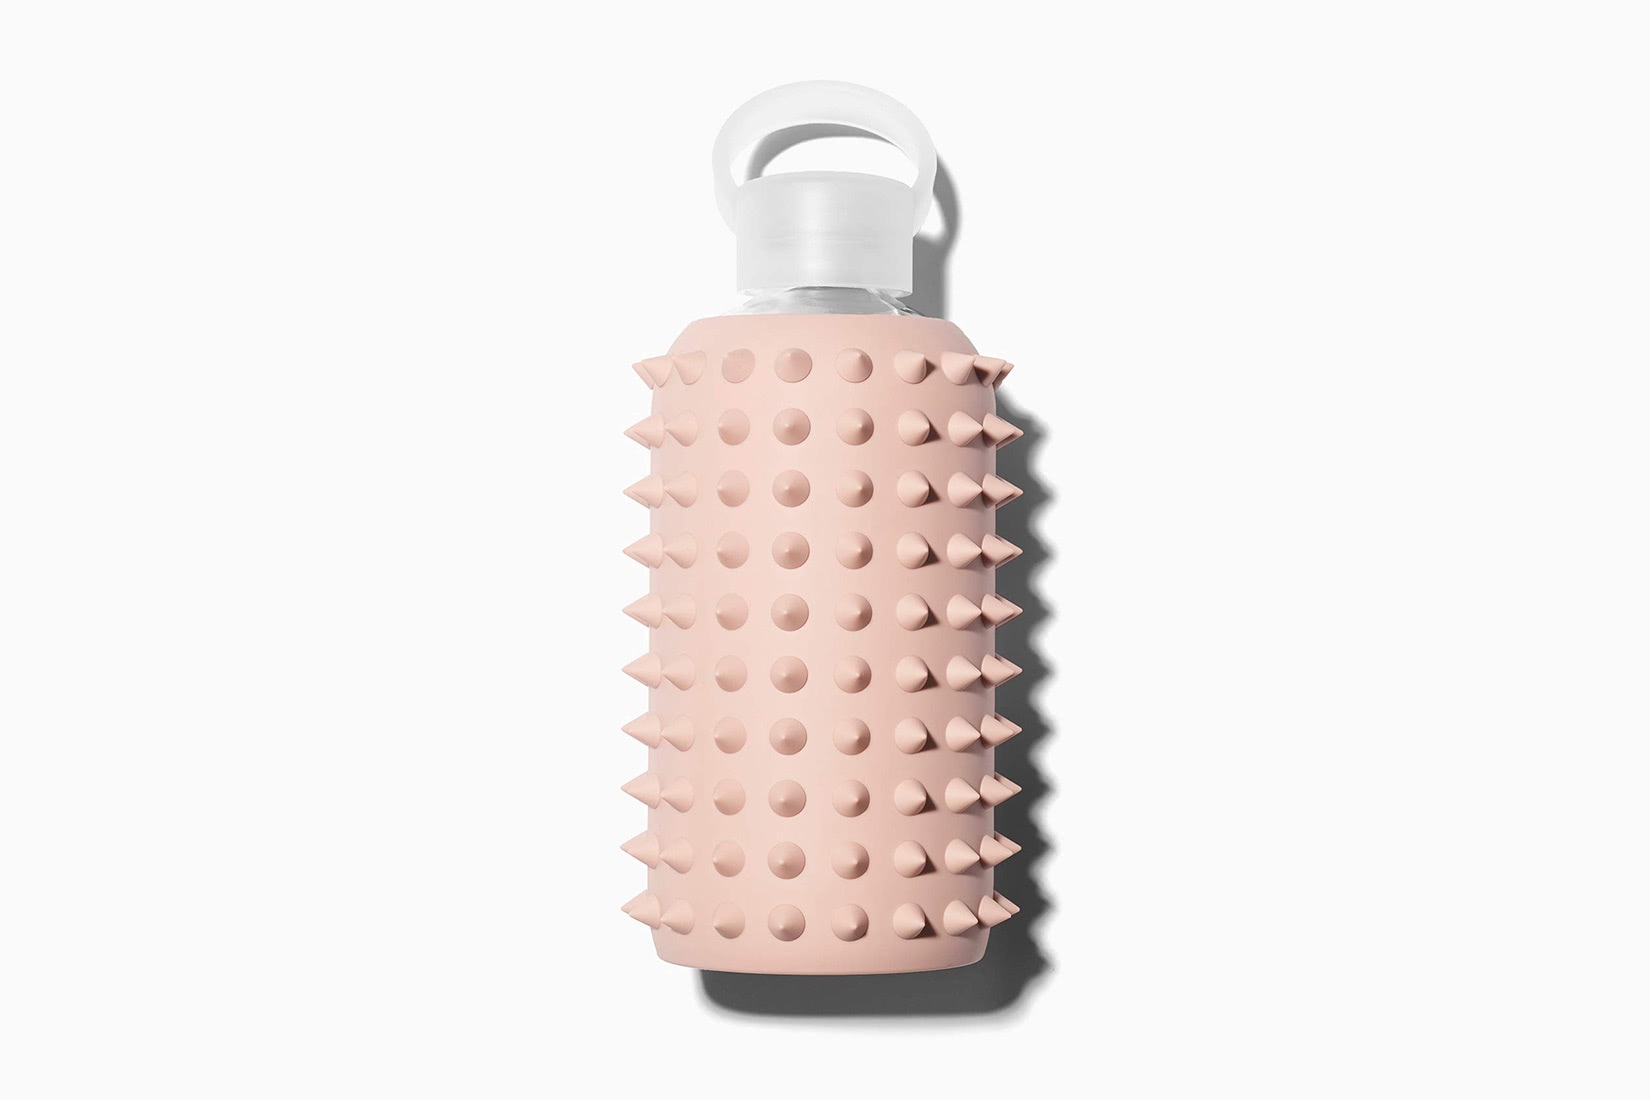 meilleures bouteilles d'eau tendance bkr spiked - Luxe Digital